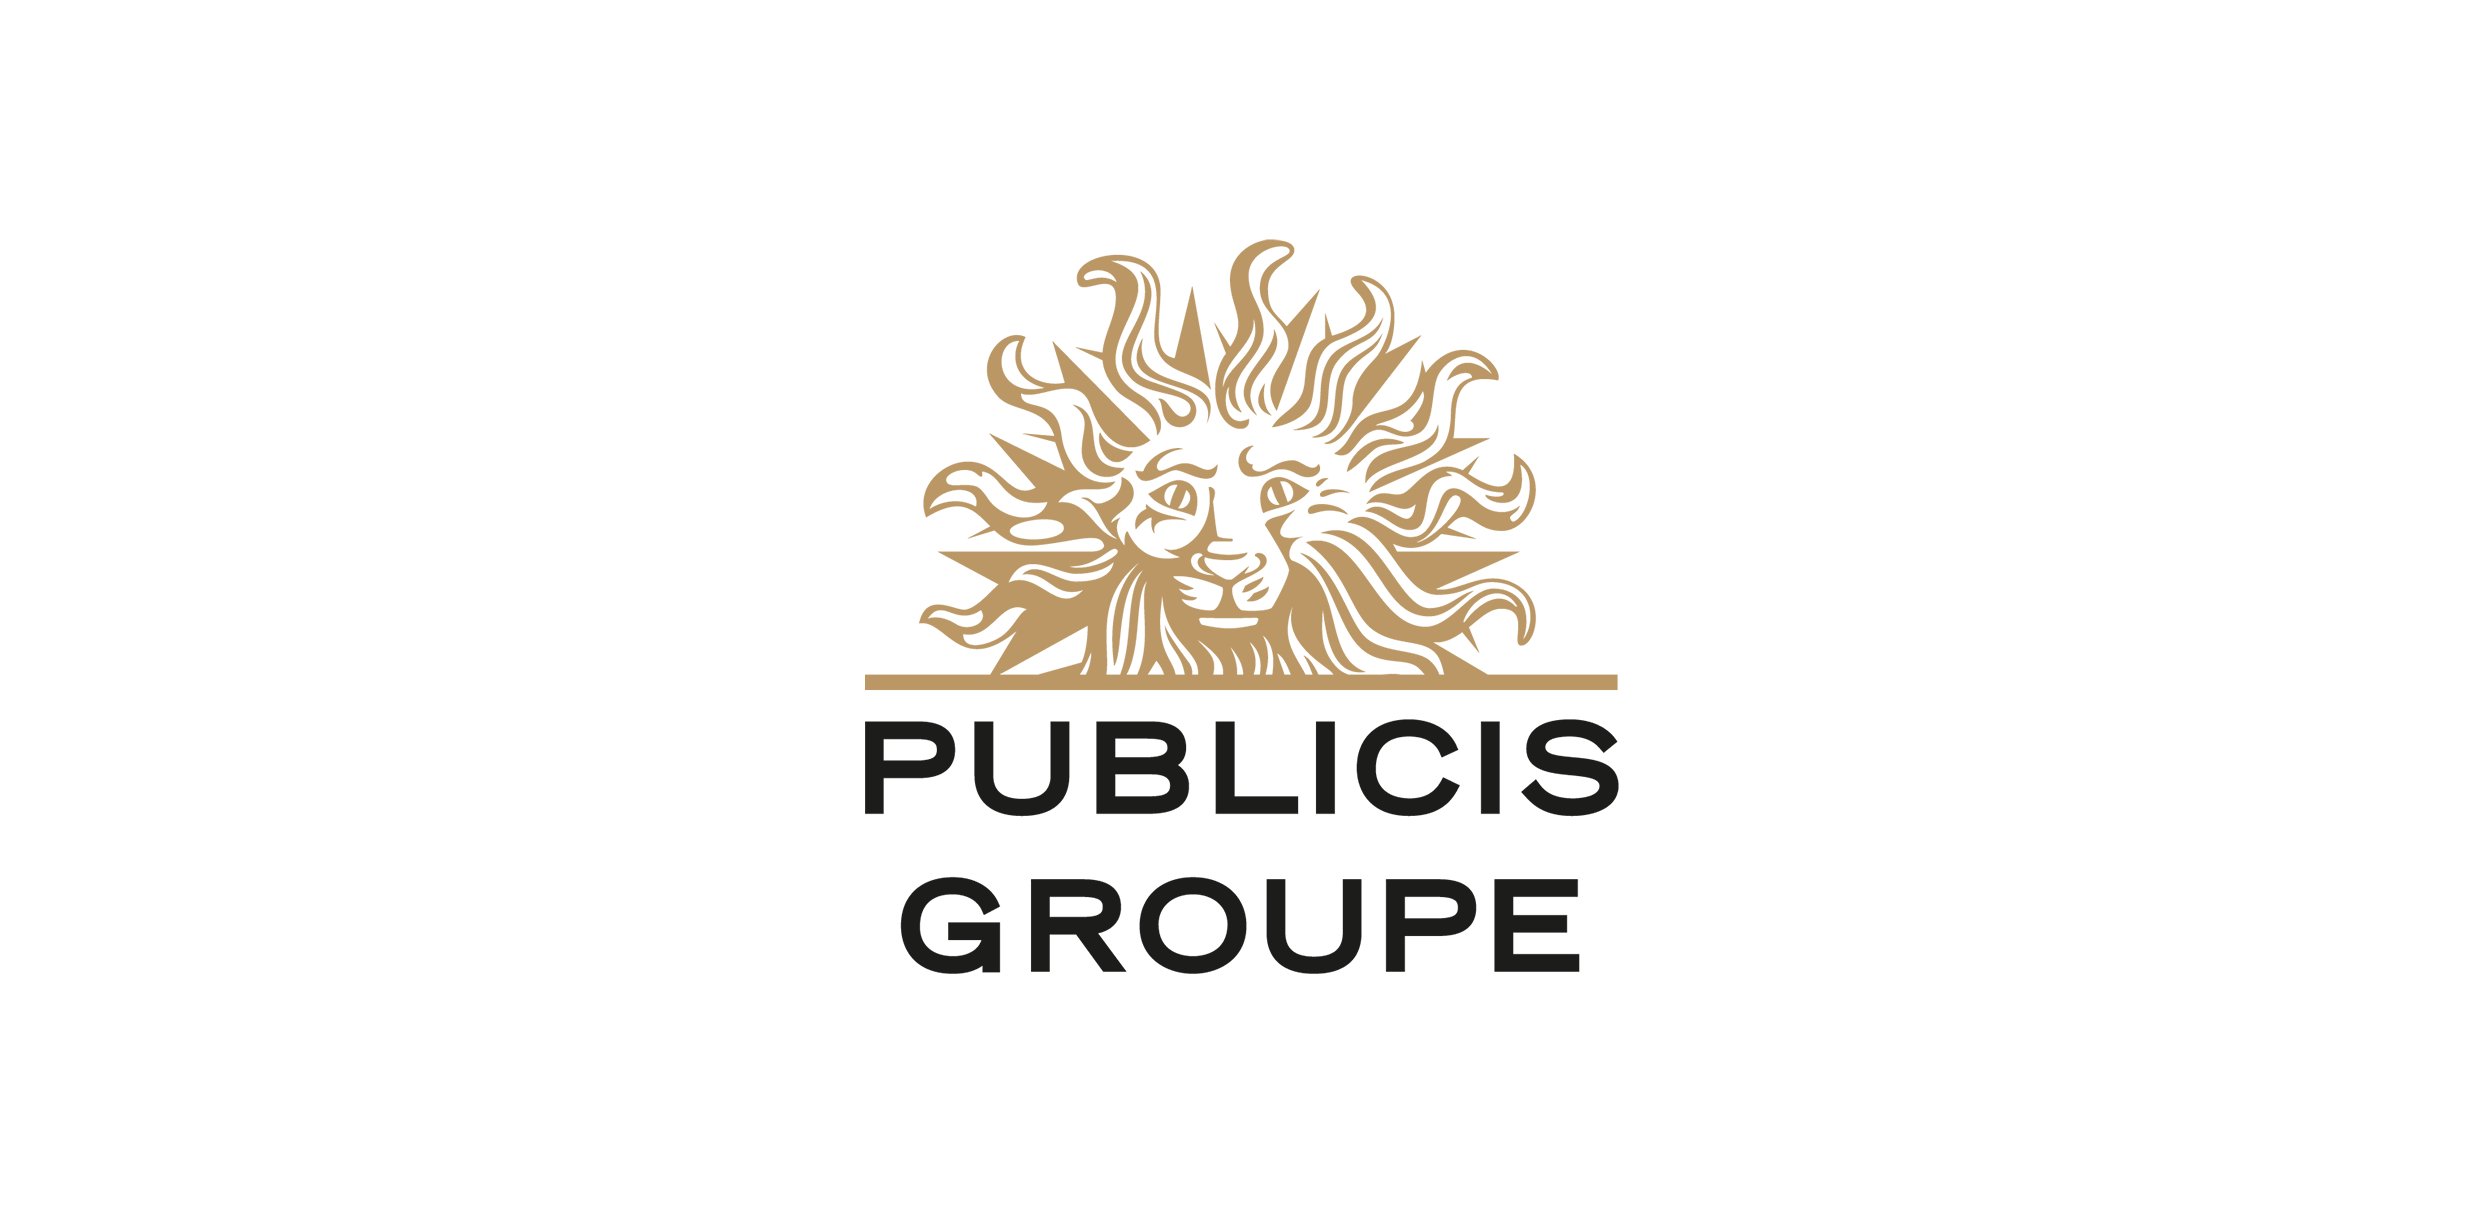 Стани дел од тимот на Публицис. Отворени се повеќе работни места!